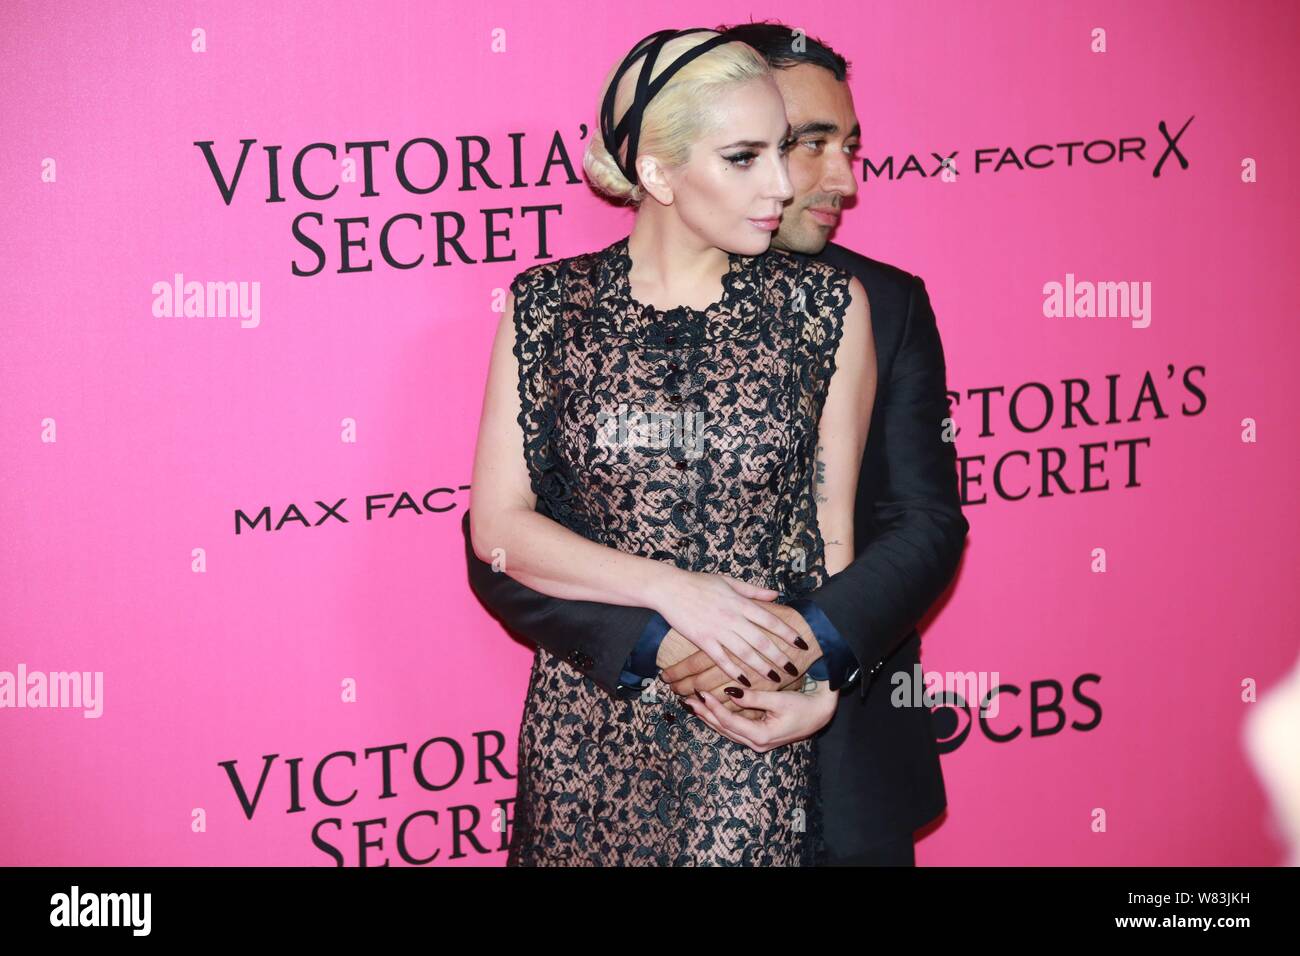 Amerikanische Sängerin Stefani Joanne Angelina Germanotta, wie Lady Gaga bekannt, kommt auf den roten Teppich für den Victoria's Secret 2016 Art Stockfoto